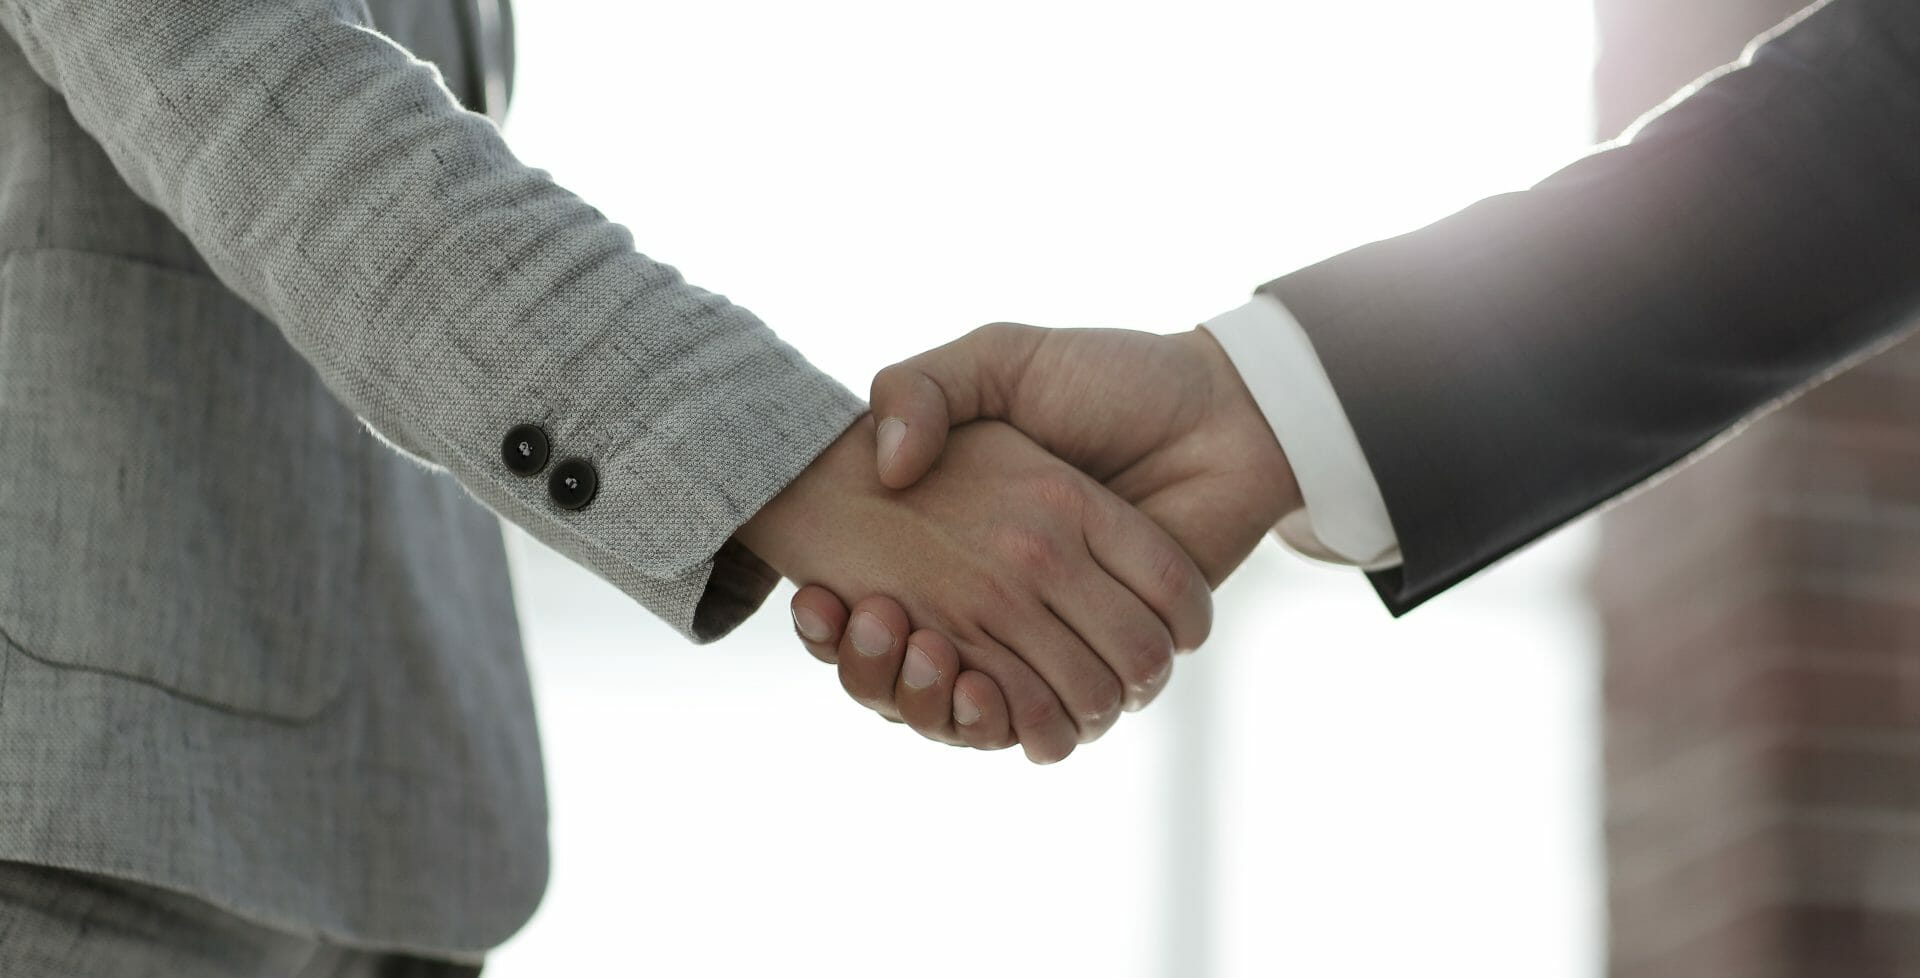 Customer handshake